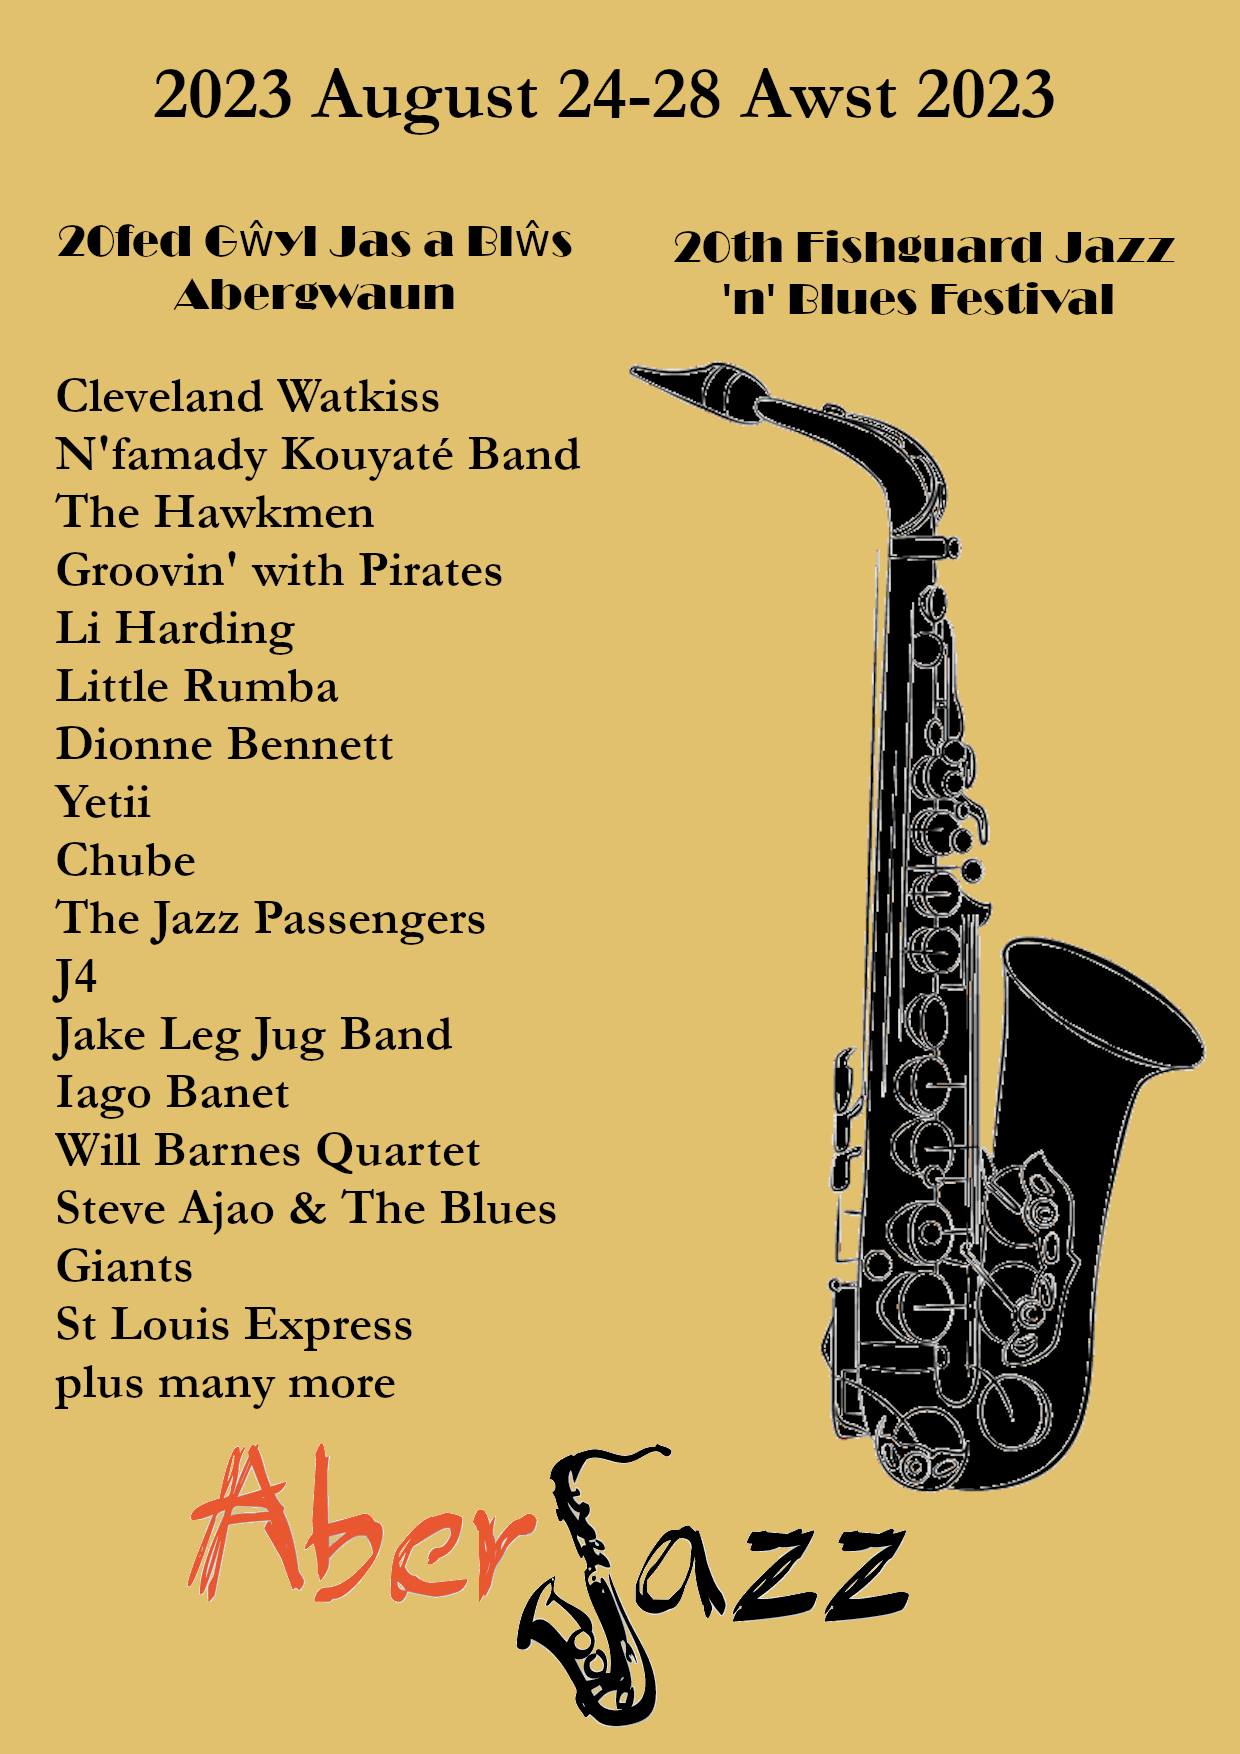 Aberjazz Jazz & Blues Festival